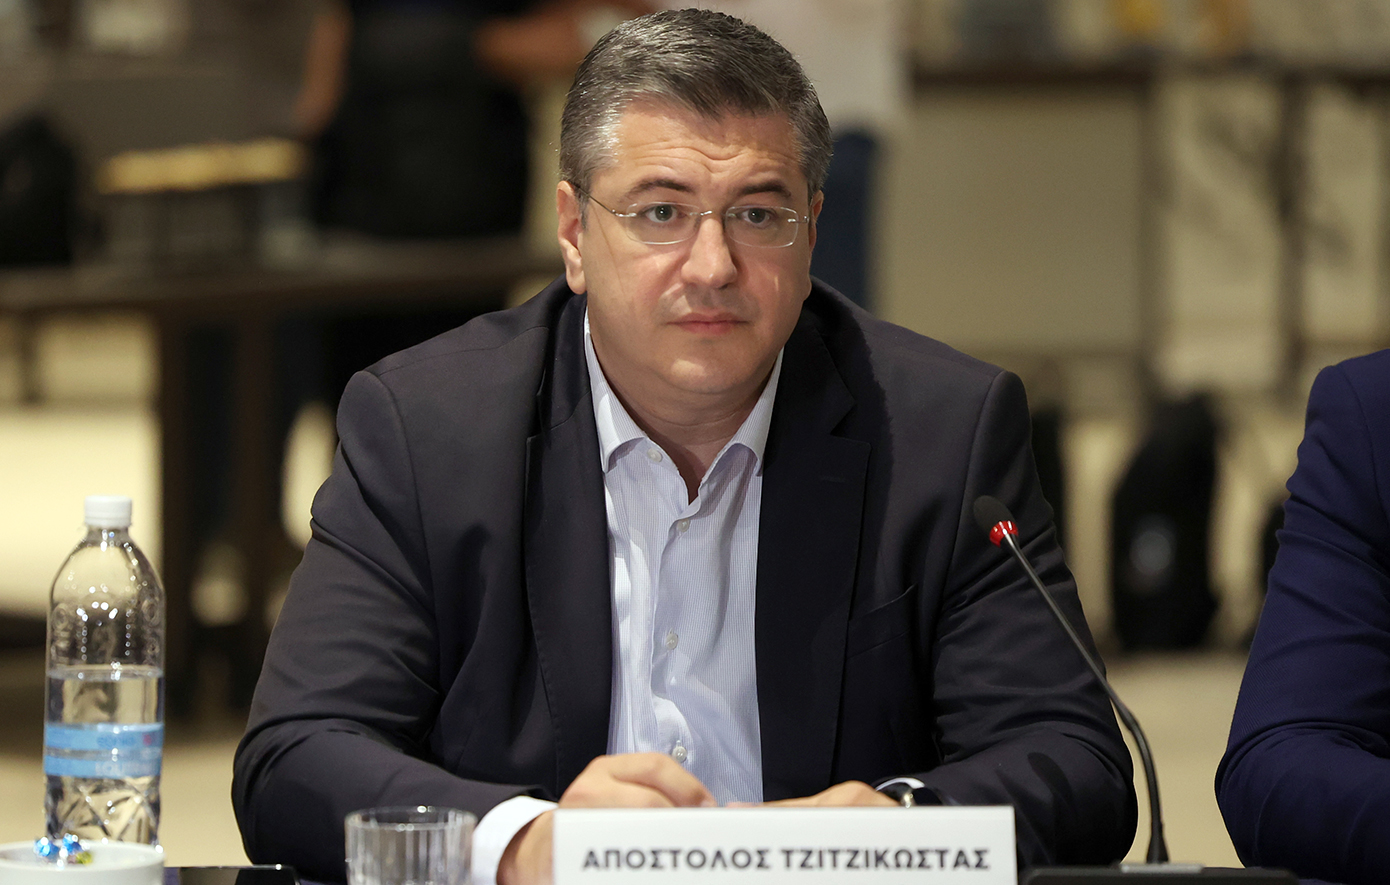 Γιατί επελέγη ο Απόστολος Τζιτζικώστας για νέος επίτροπος στην ΕΕ &#8211; Όλα τα σενάρια για το χαρτοφυλάκιο που στοχεύει η Ελλάδα